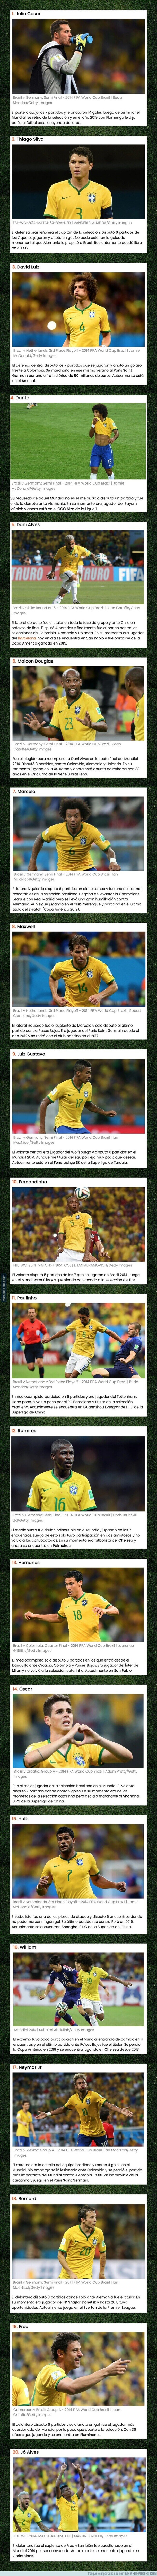 1107527 - Así es la vida de los jugadores que conformaban la selección de Brasil en 2014